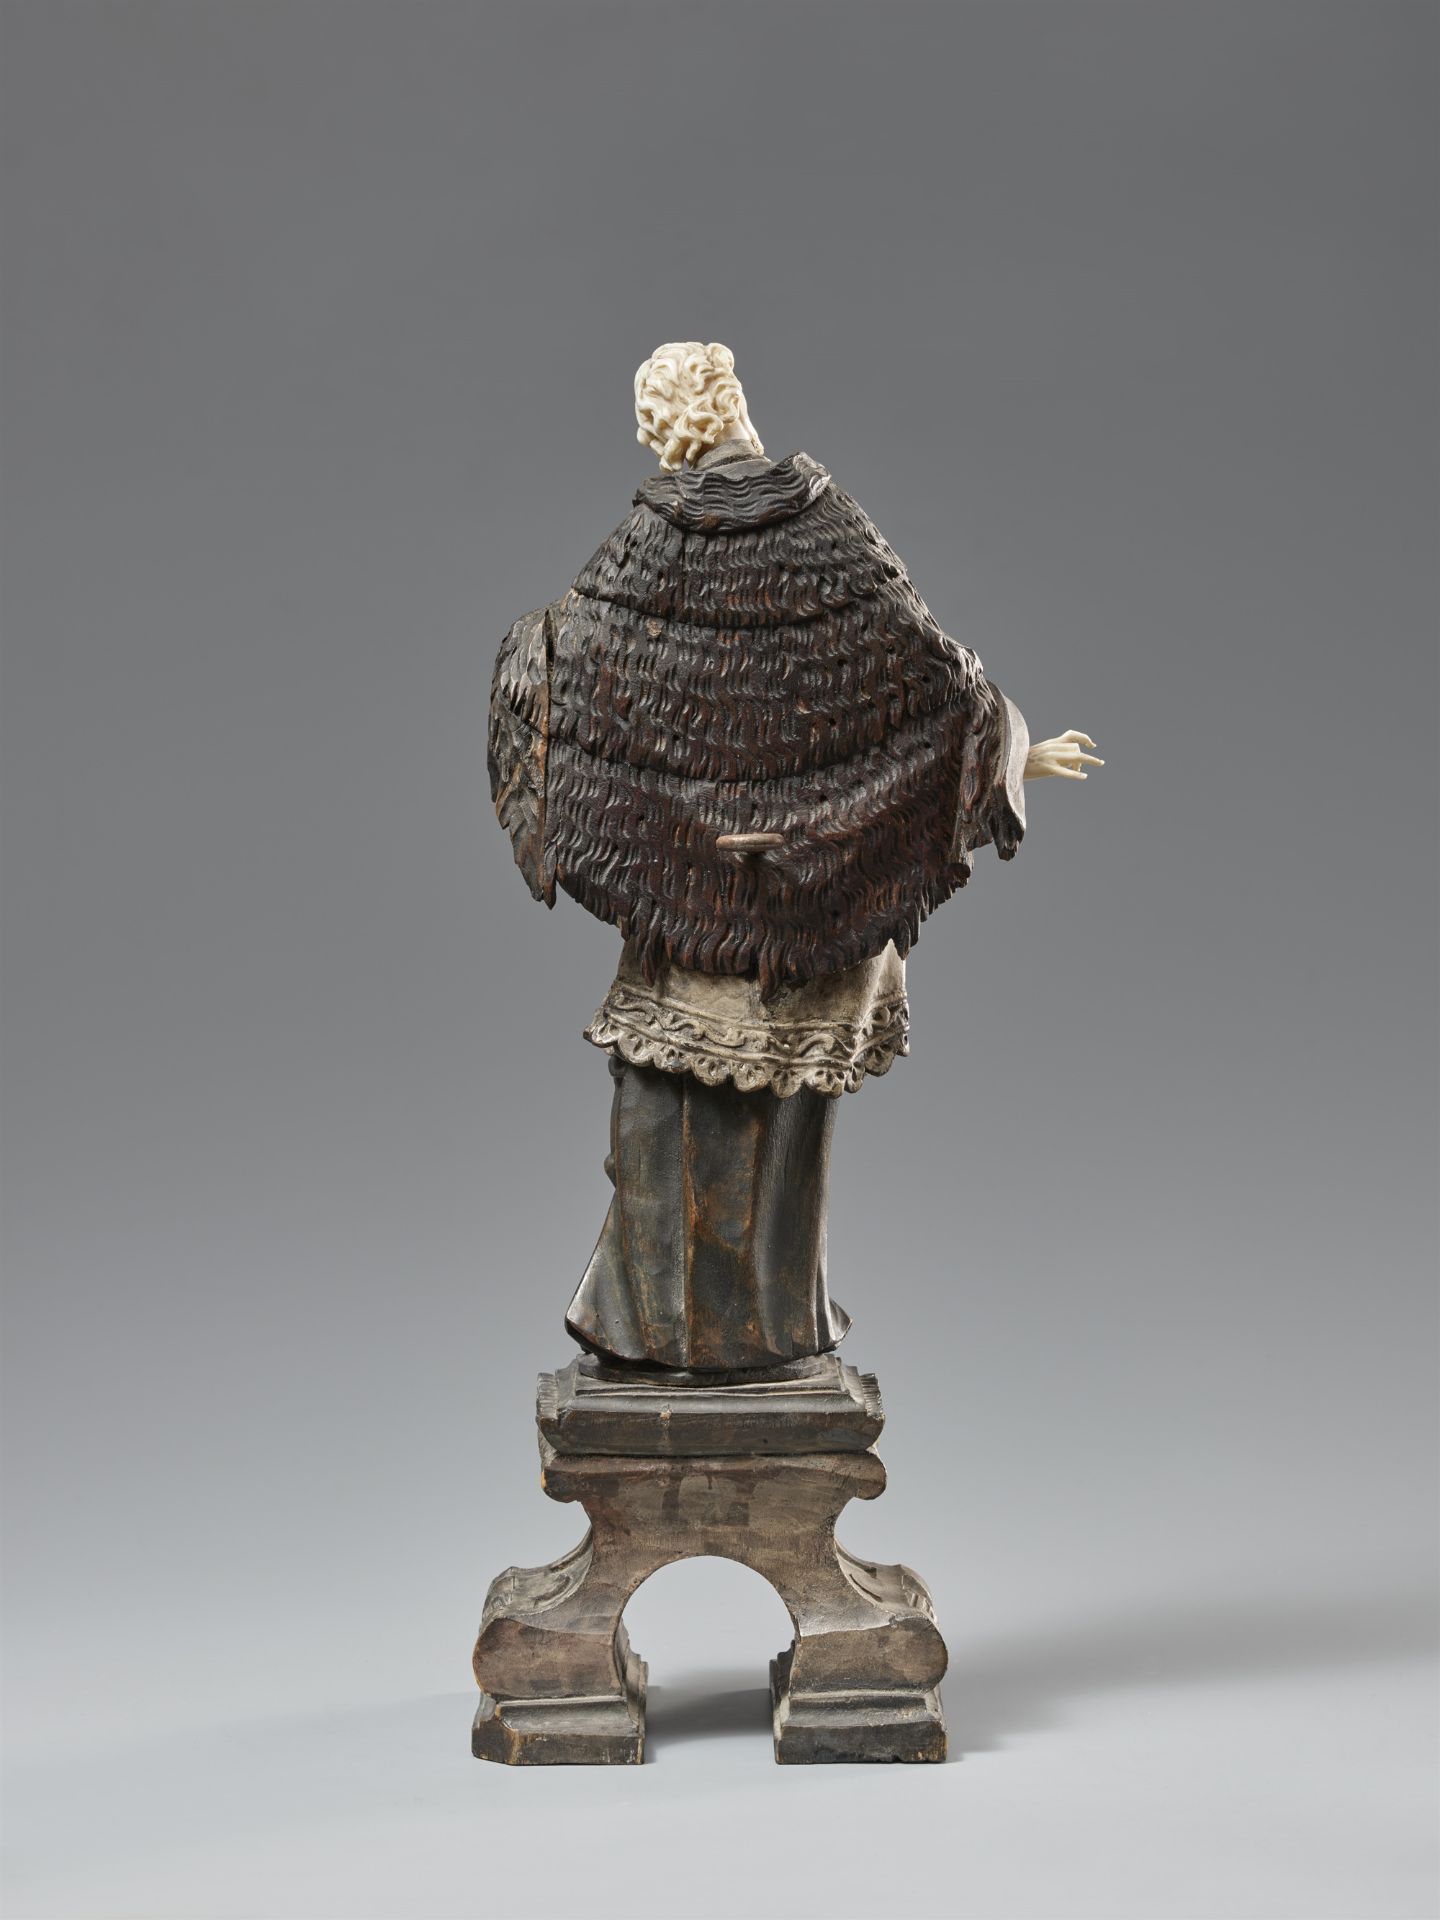 Indo-portugiesische Figur des Heiligen Nepomuk. Bemaltes Holz und Elfenbein. 18. Jh. Möglicherweise  - Bild 2 aus 2